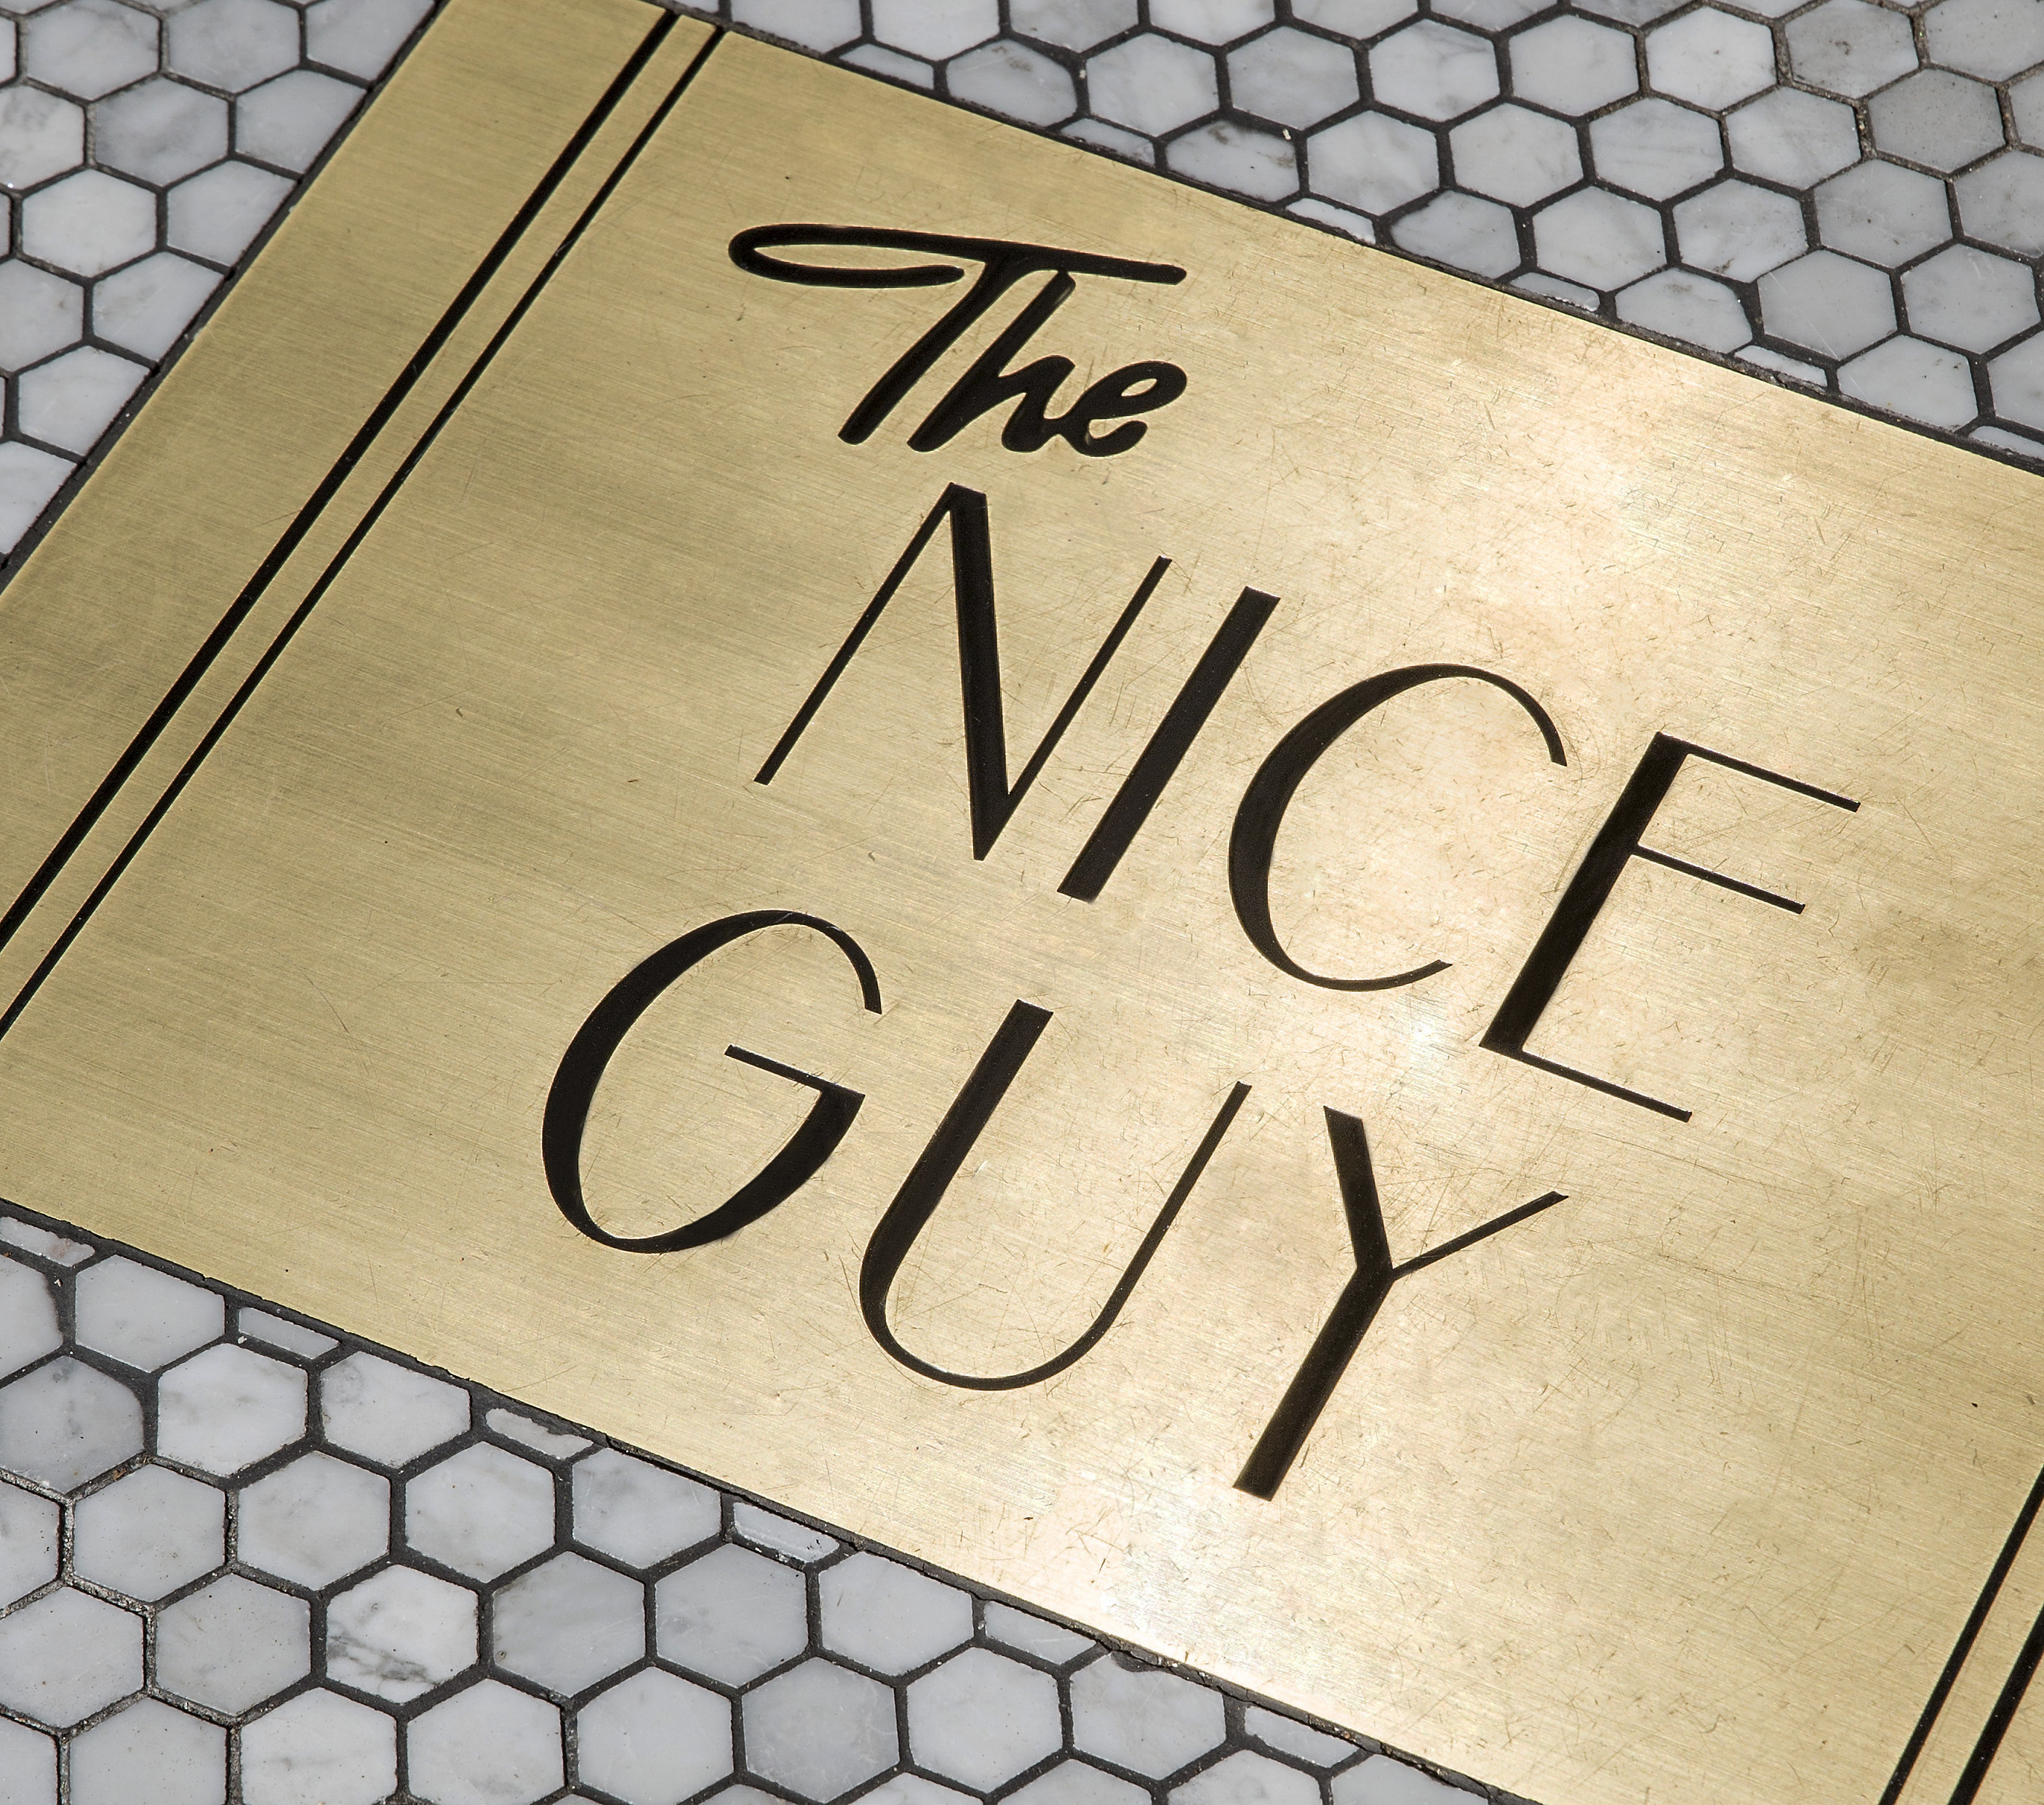 the nice guy-6